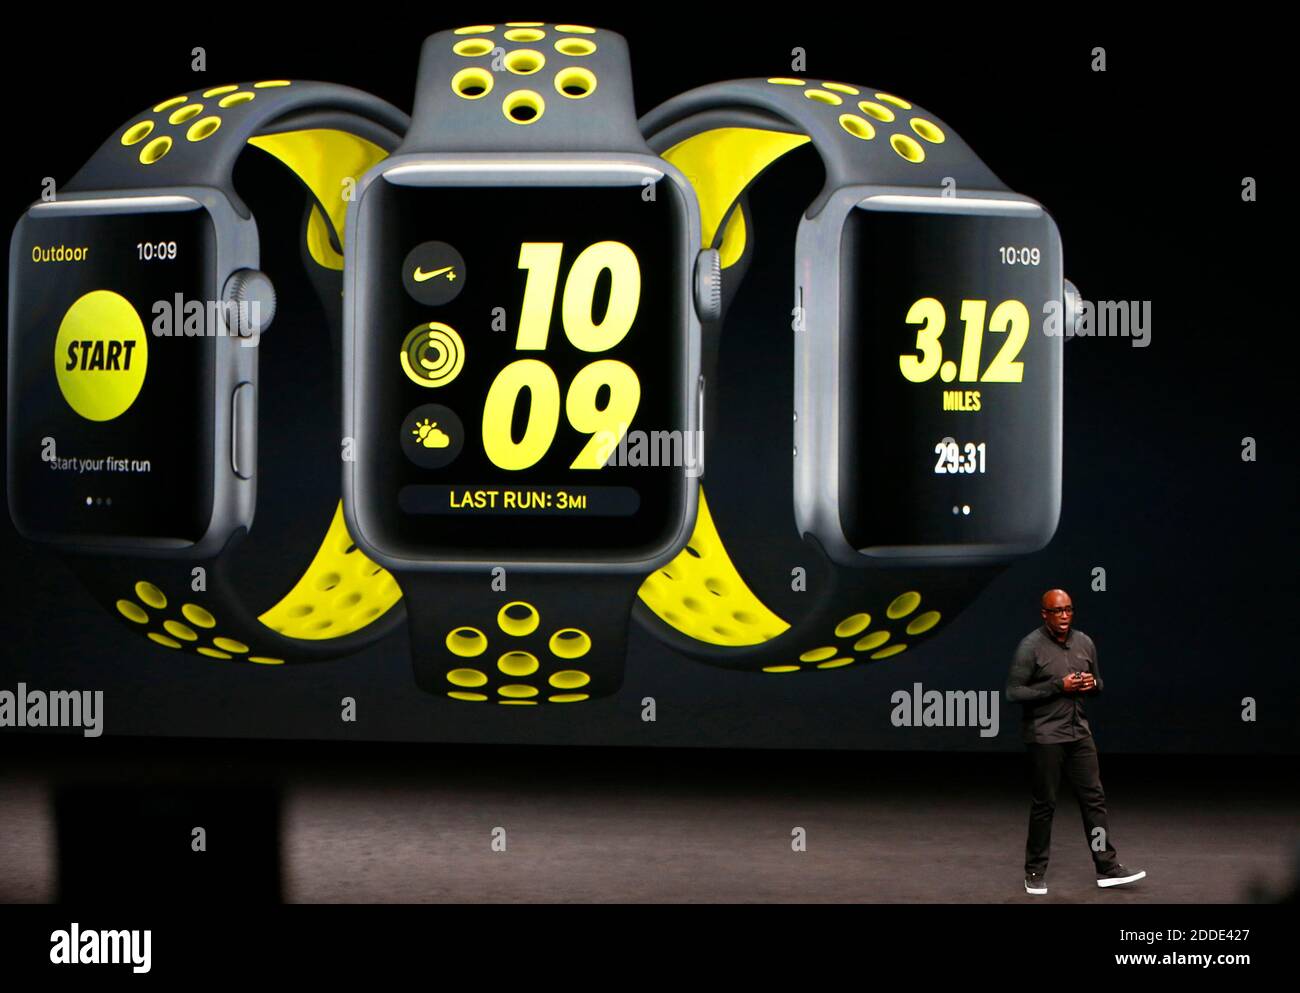 NO HAY PELÍCULA, NO HAY VÍDEO, NO hay televisión, NO HAY DOCUMENTAL - el  presidente de Nike, Trevor Edwards, habla sobre el nuevo reloj Nike Apple  durante el lanzamiento de un producto